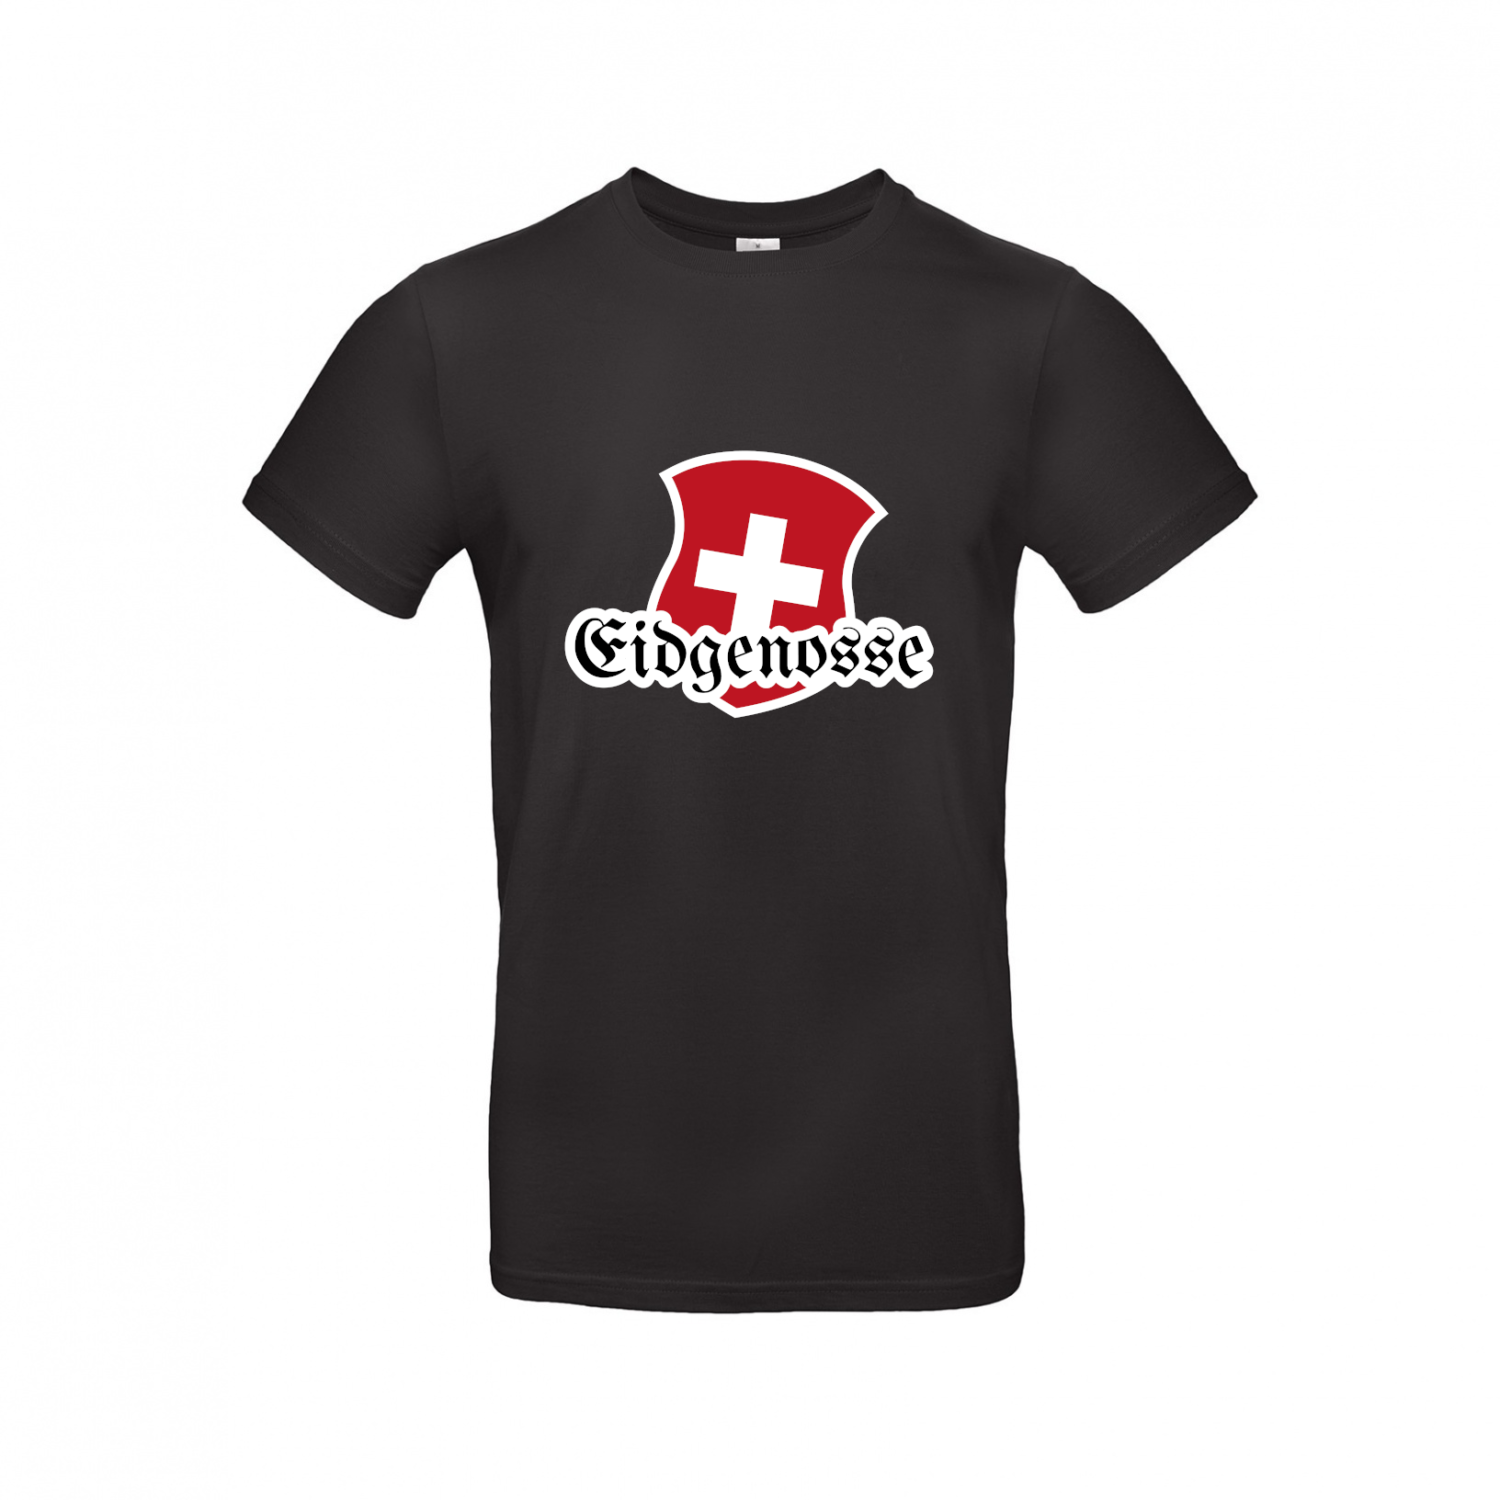 T-Shirt | Eidgenosse mit Schweizer Wappen - Herren T-Shirt